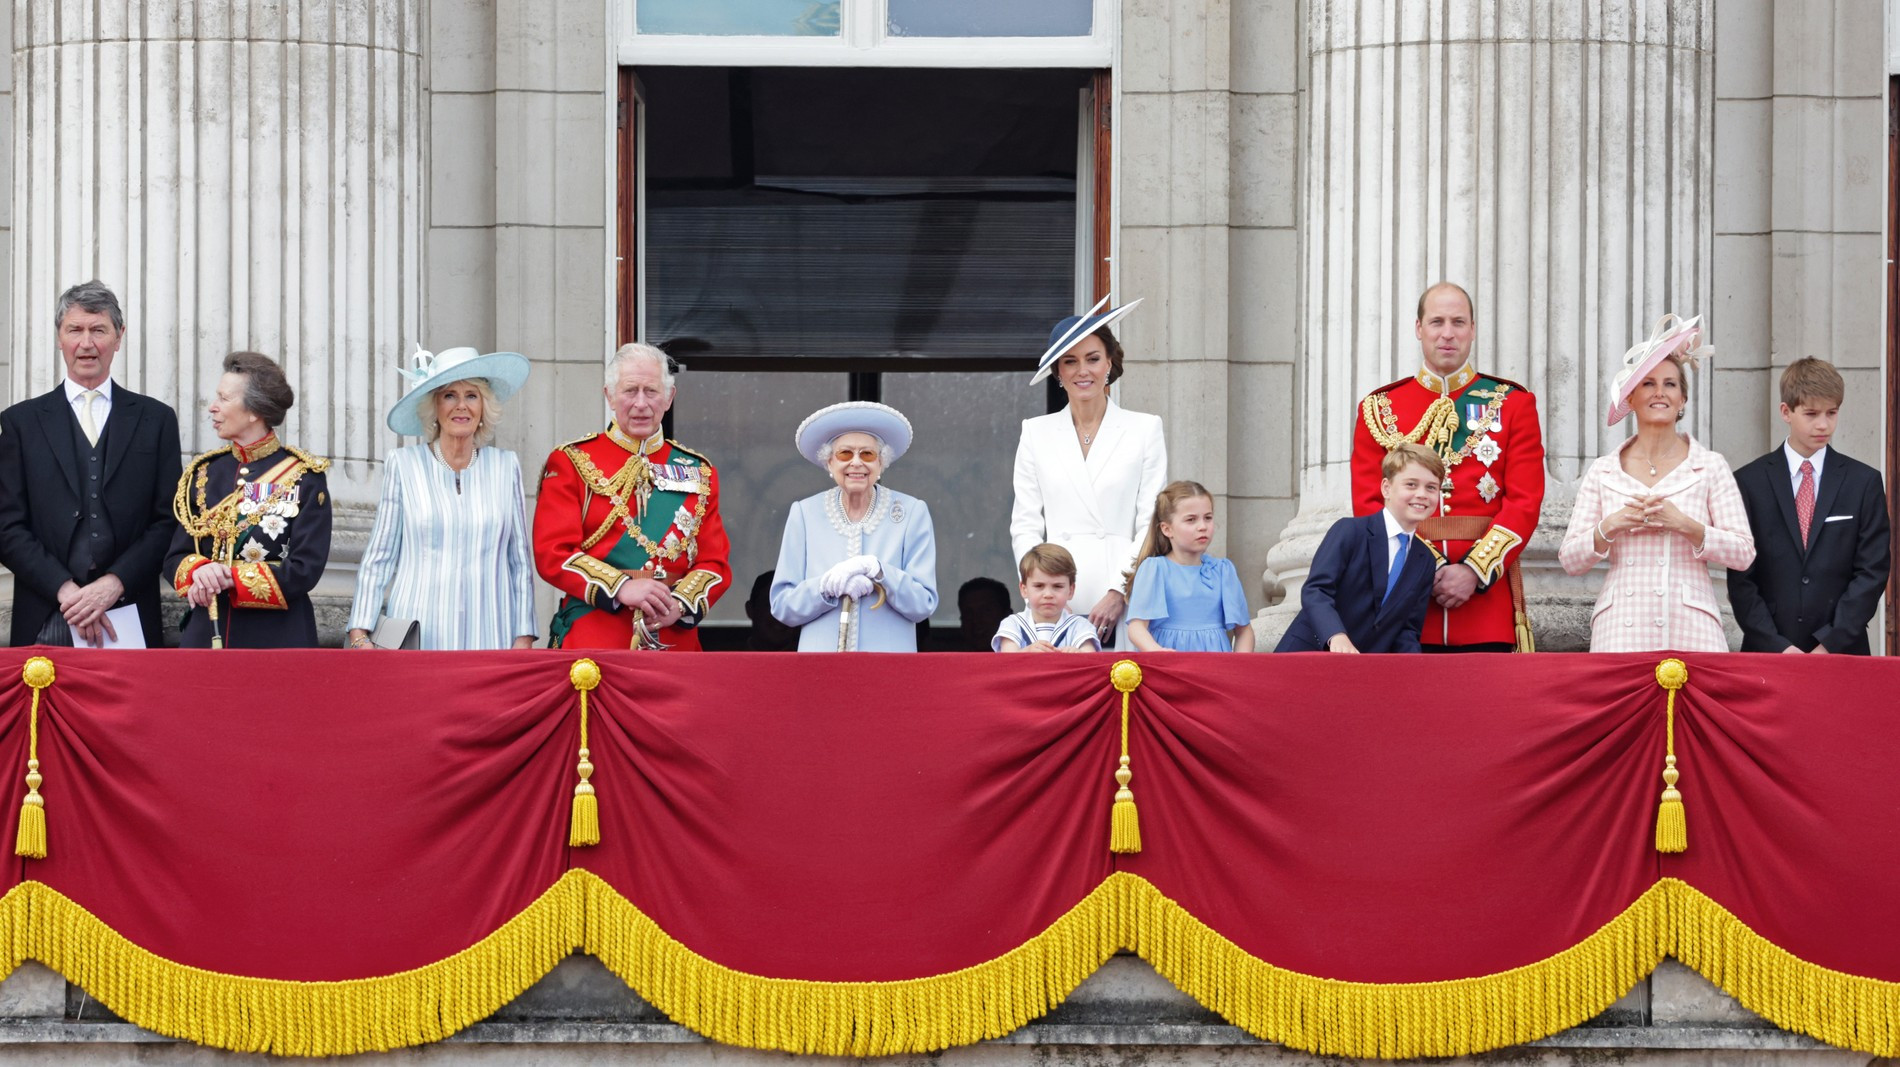 Тимоти Лоуренс, принцесса Анна, Камилла, принц Чарльз, Королева, принц Луи, герцогиня Кембриджская, принцесса Шарлотта, принц Джордж, принц Вильям и Софи, графиня Уэссекская